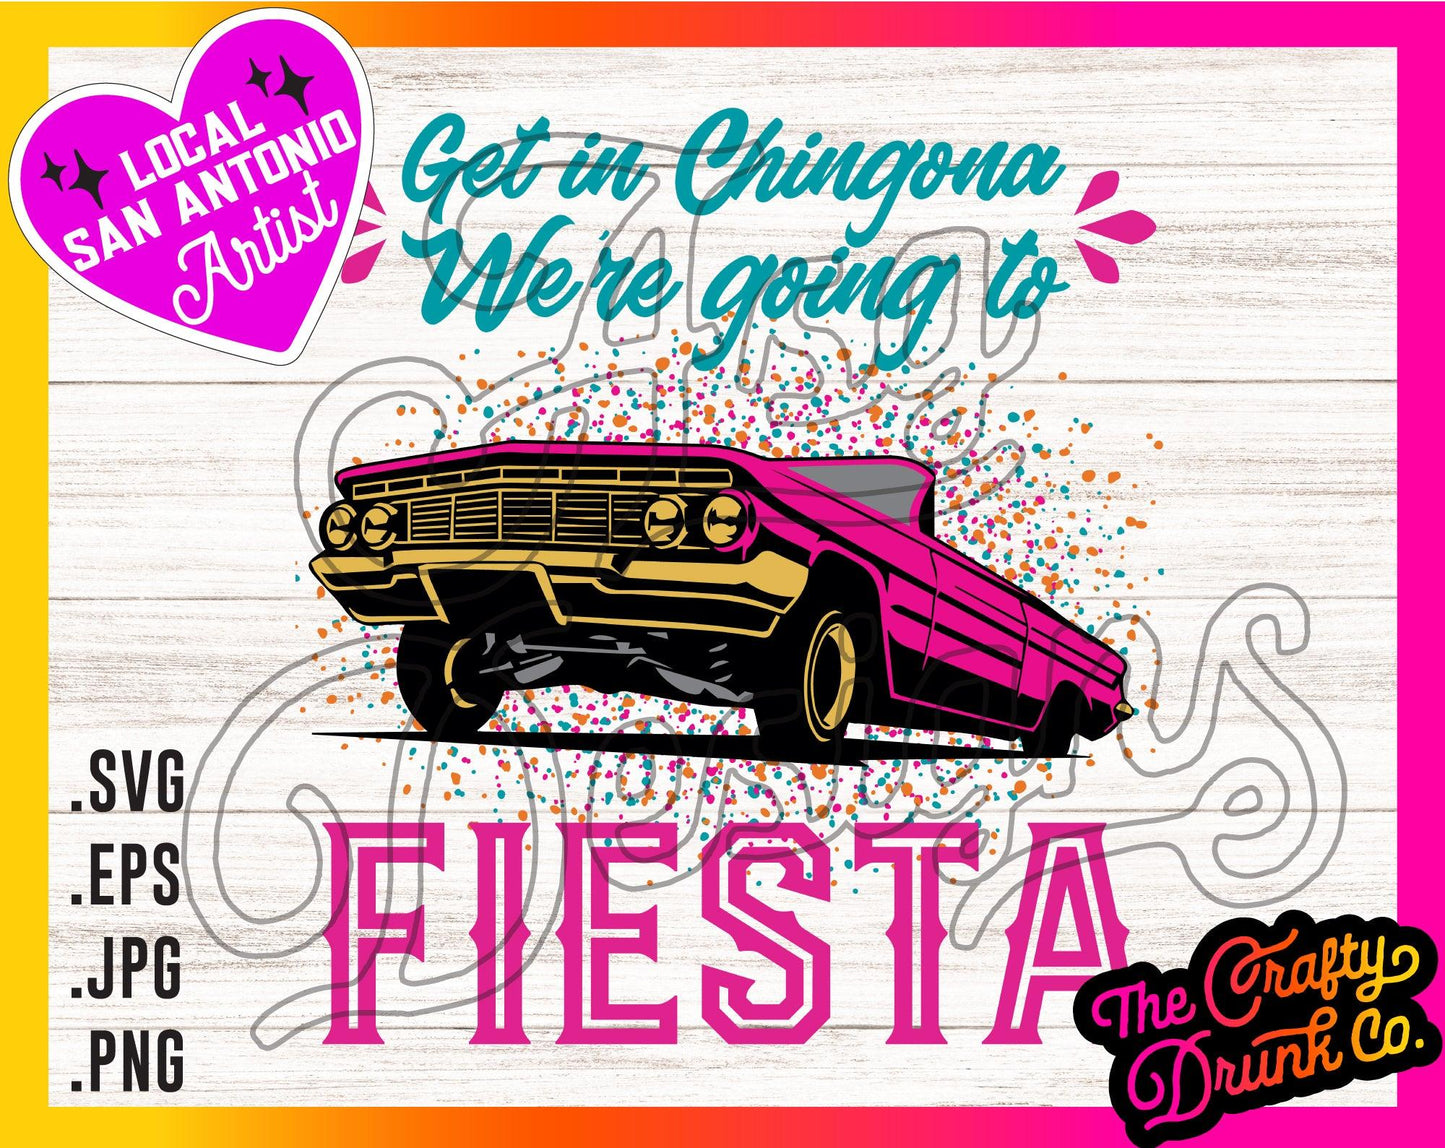 Get in Chingona, We're going to Fiesta - TheCraftyDrunkCo